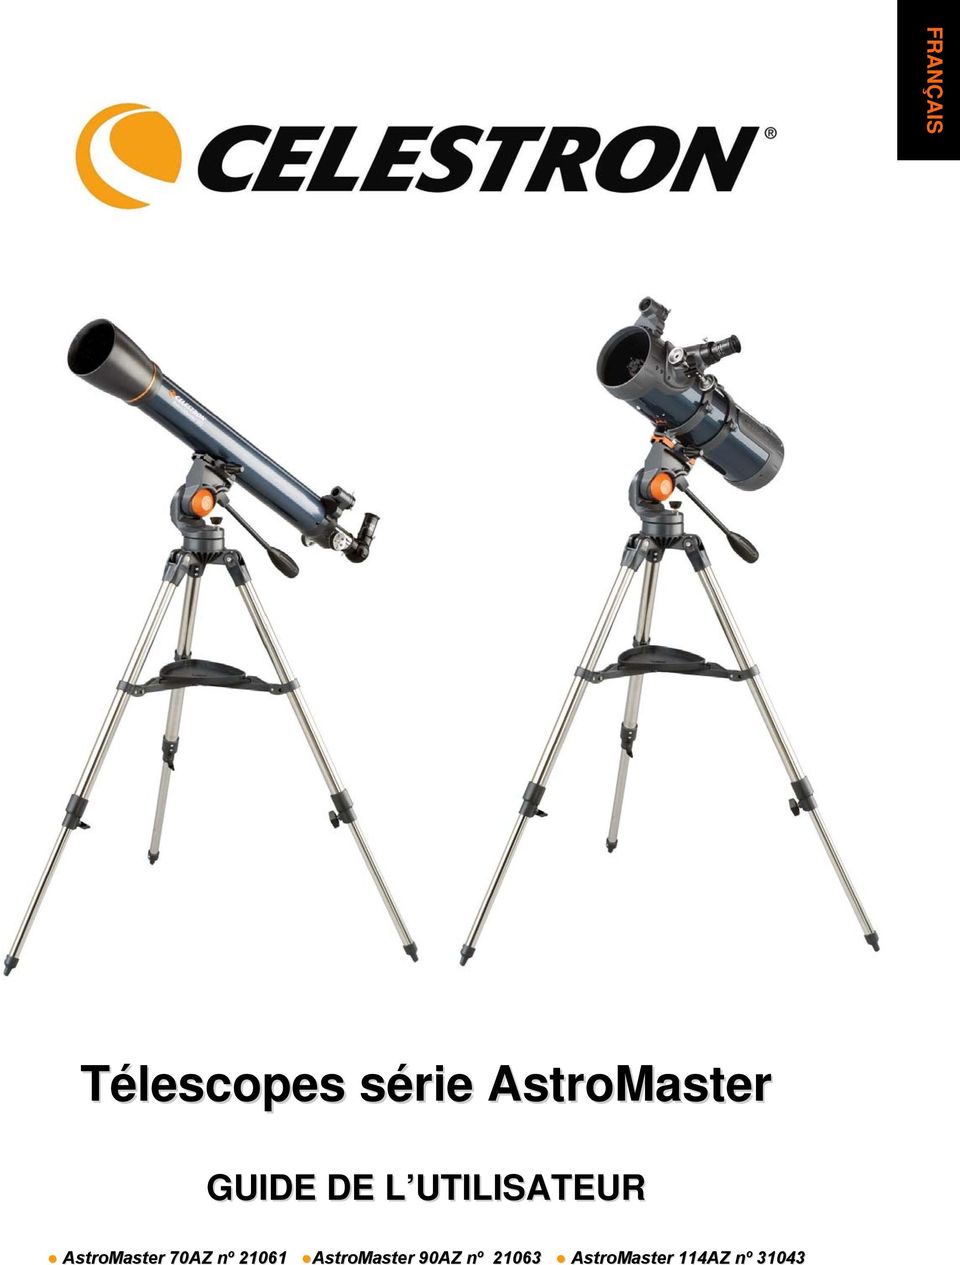 AstroMaster 70AZ nº 21061